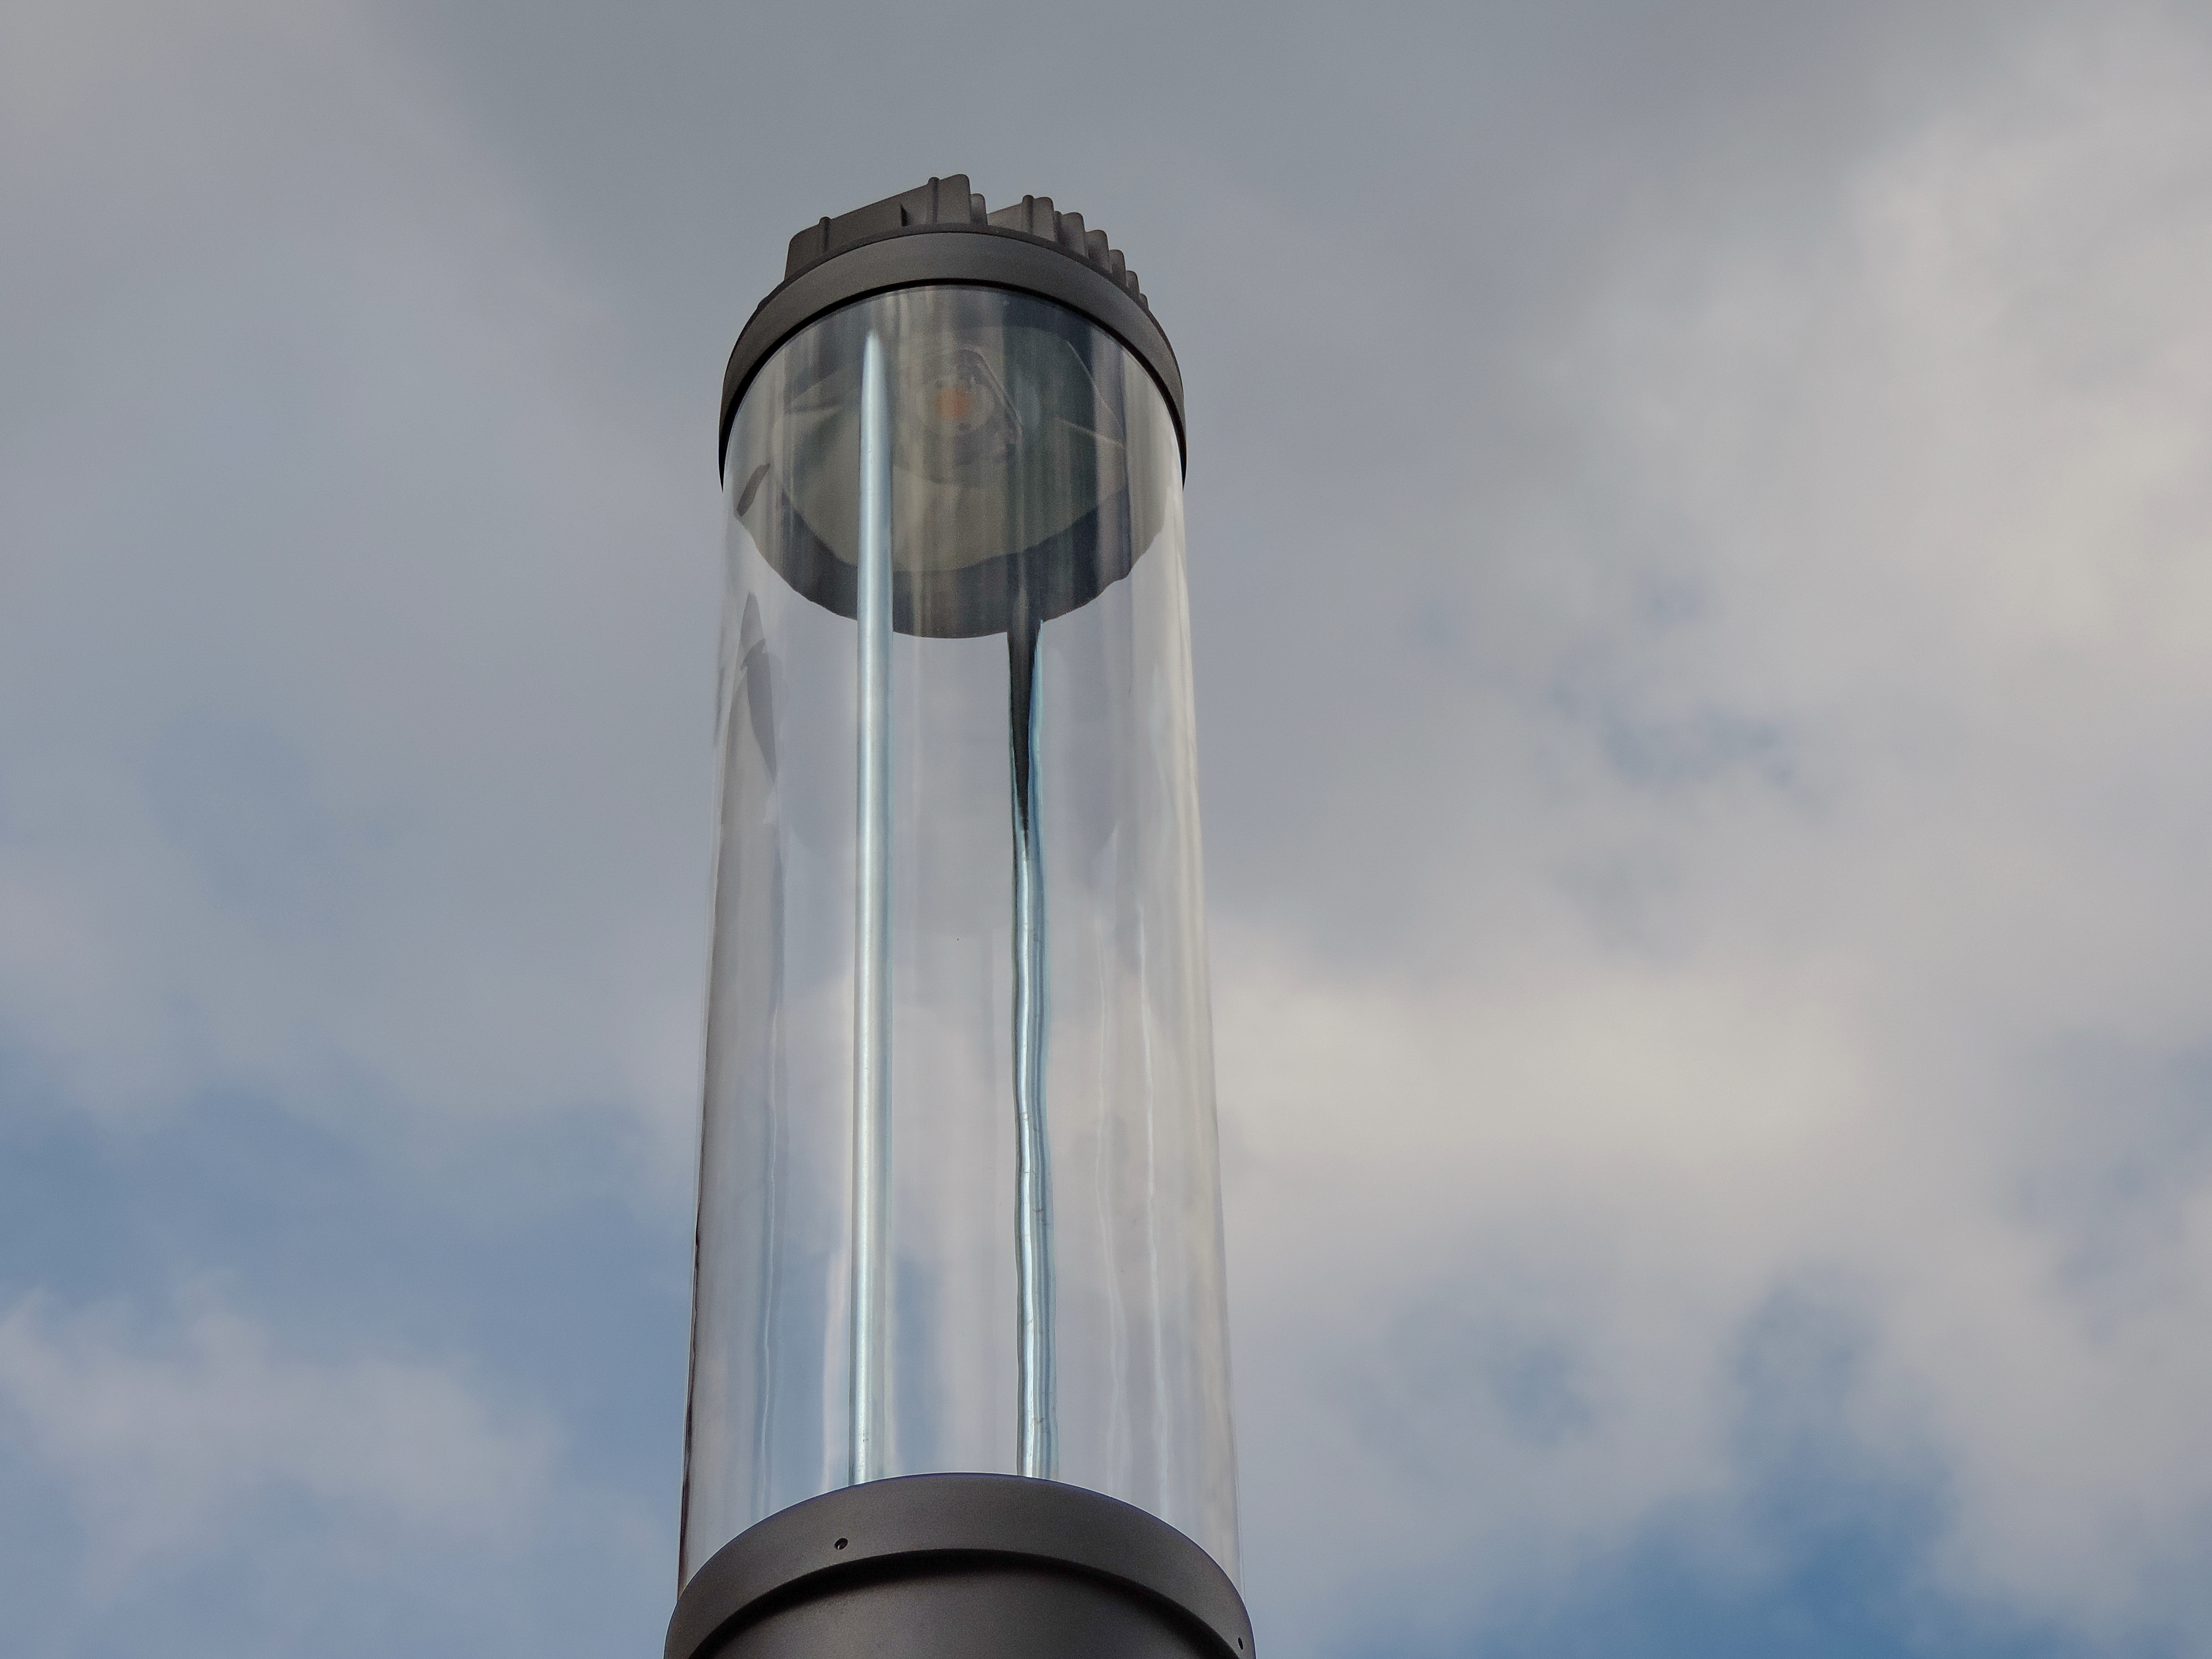 Воздушный стеклянный колокол. Фильтр воздушный стеклянный. Фонарь верхнего света в архитектуре виды. По краю стекла воздух